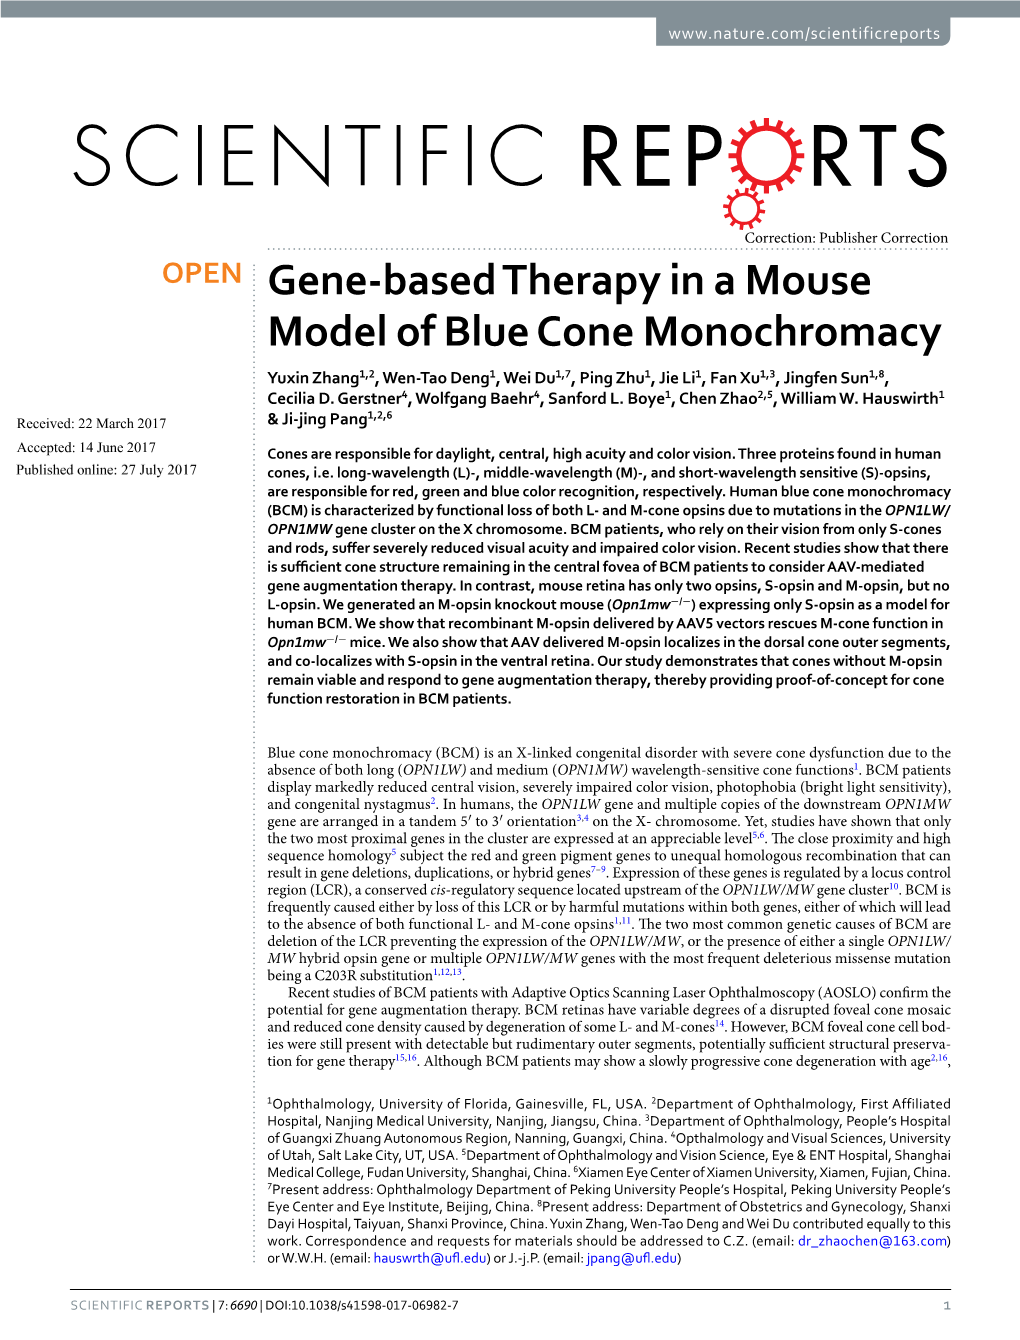 Gene-Based Therapy in a Mouse Model of Blue Cone Monochromacy Yuxin Zhang1,2, Wen-Tao Deng1, Wei Du1,7, Ping Zhu1, Jie Li1, Fan Xu1,3, Jingfen Sun1,8, Cecilia D